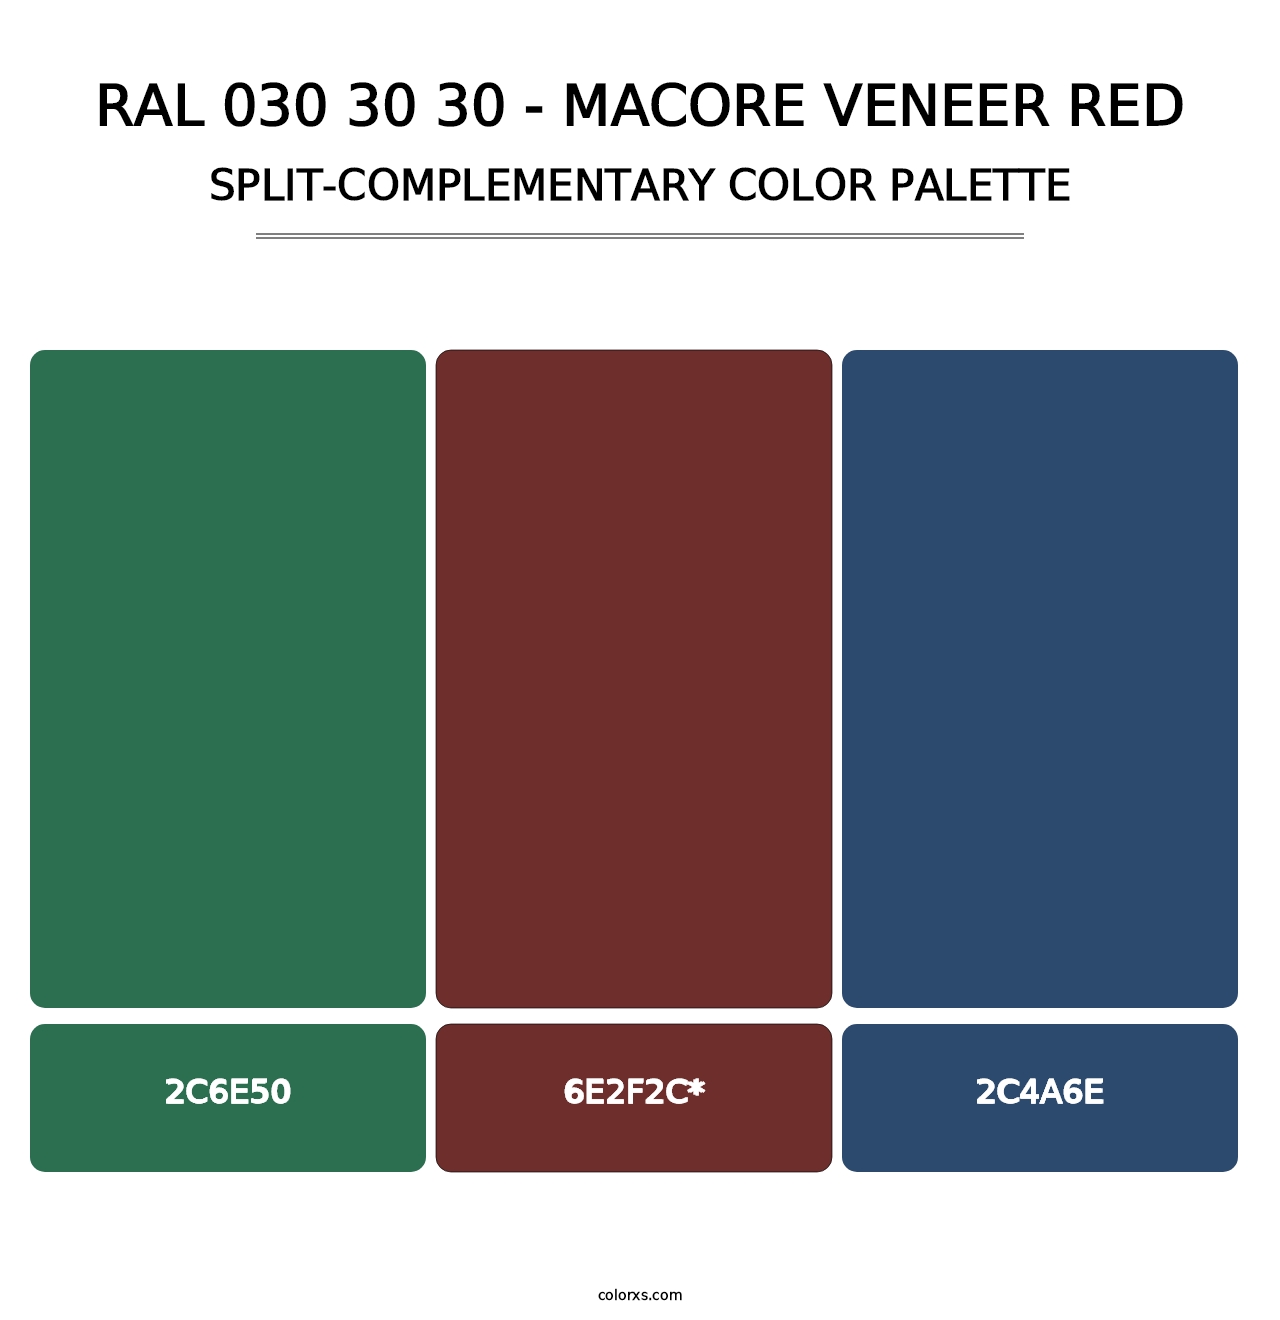 RAL 030 30 30 - Macore Veneer Red - Split-Complementary Color Palette